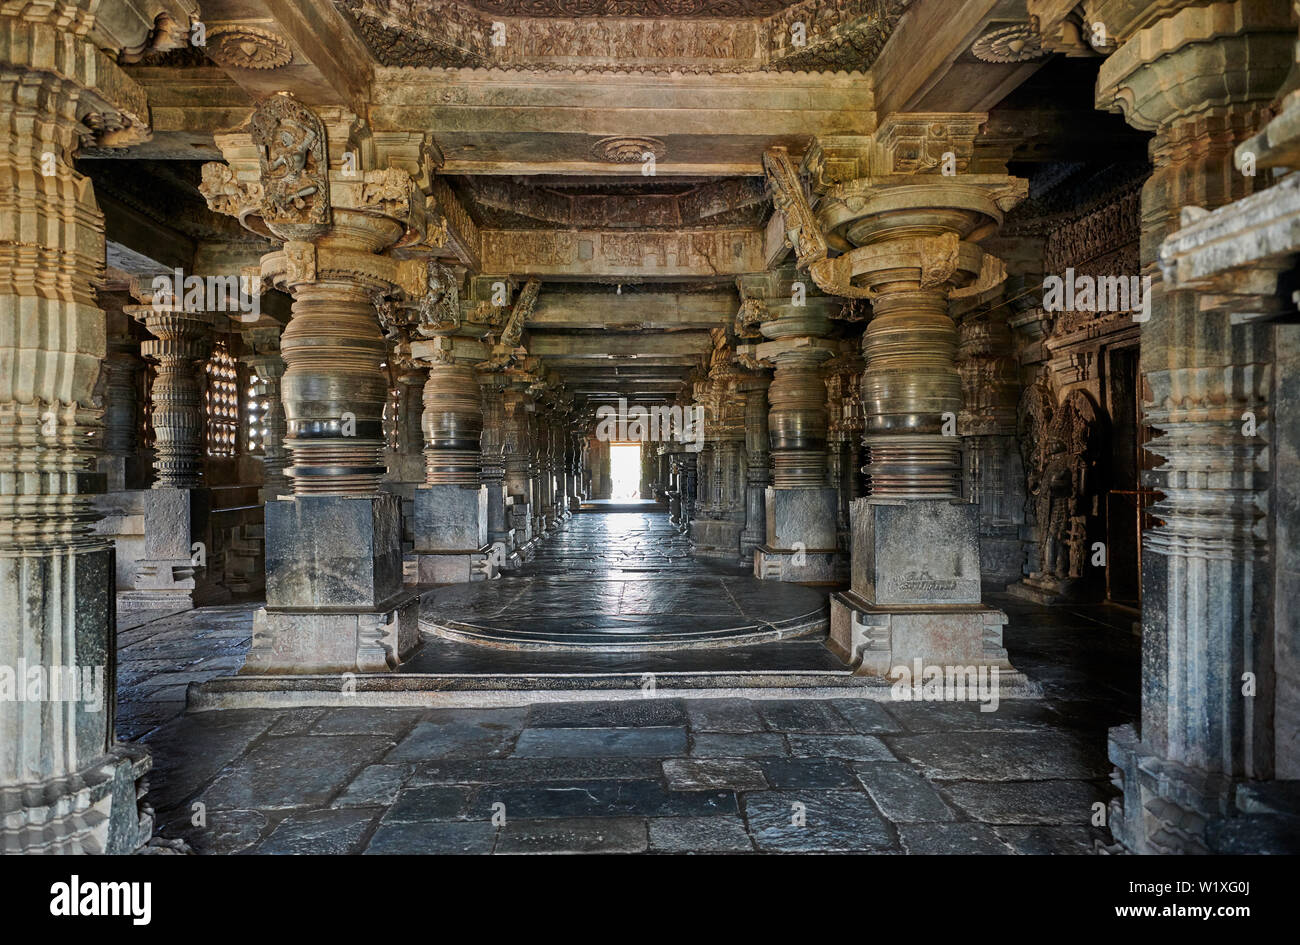 Innere Aufnahme der Halebid Hoysaleswara Jain Tempel, Dwarasamudra (Tor zur See), Halebidu, Hassan, Karnataka, Indien Stockfoto